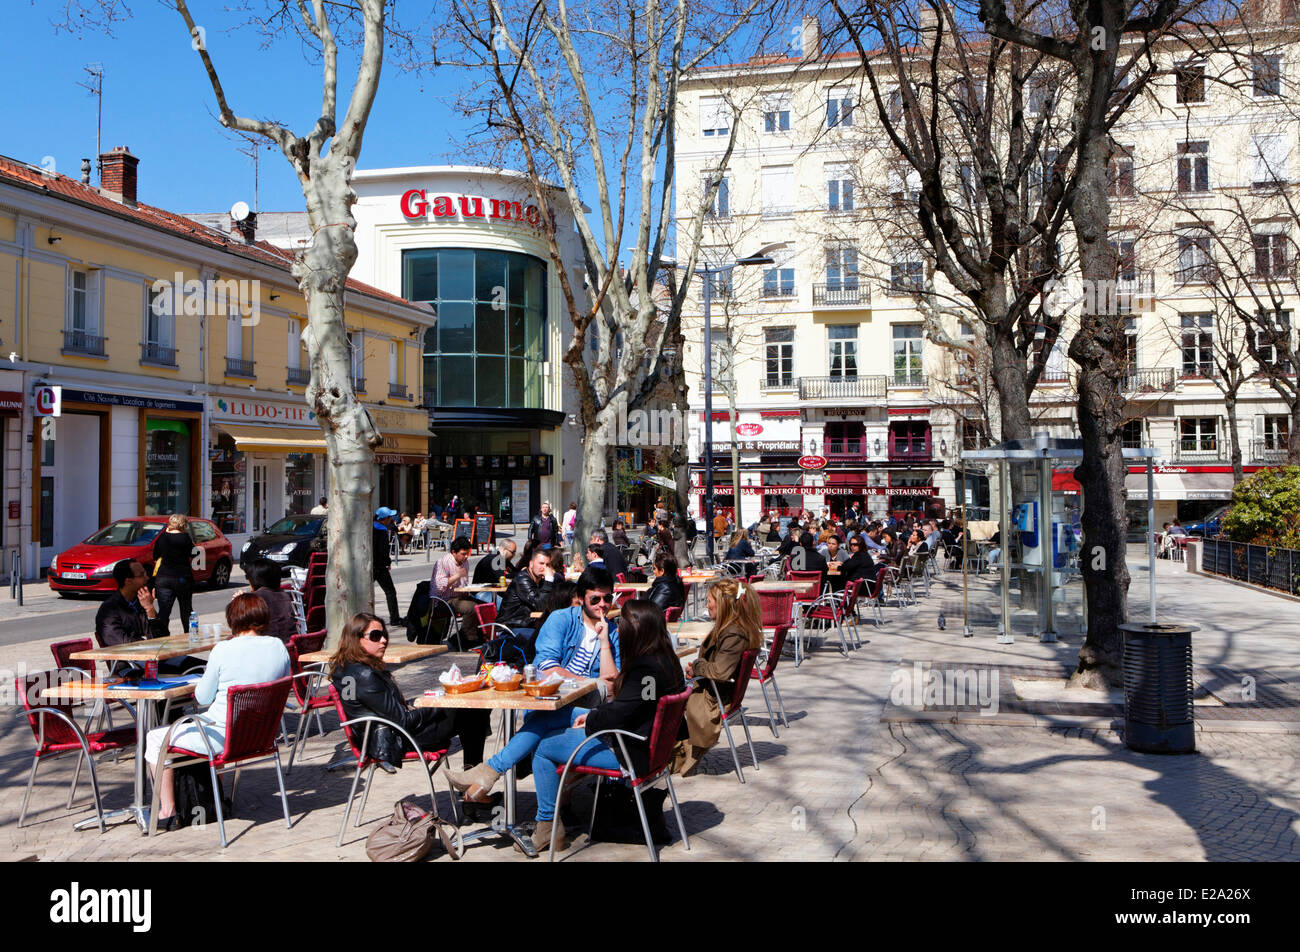 France, Loire, Saint Etienne, cafe Place Jean Jaures (Jean Jaures square  Stock Photo - Alamy